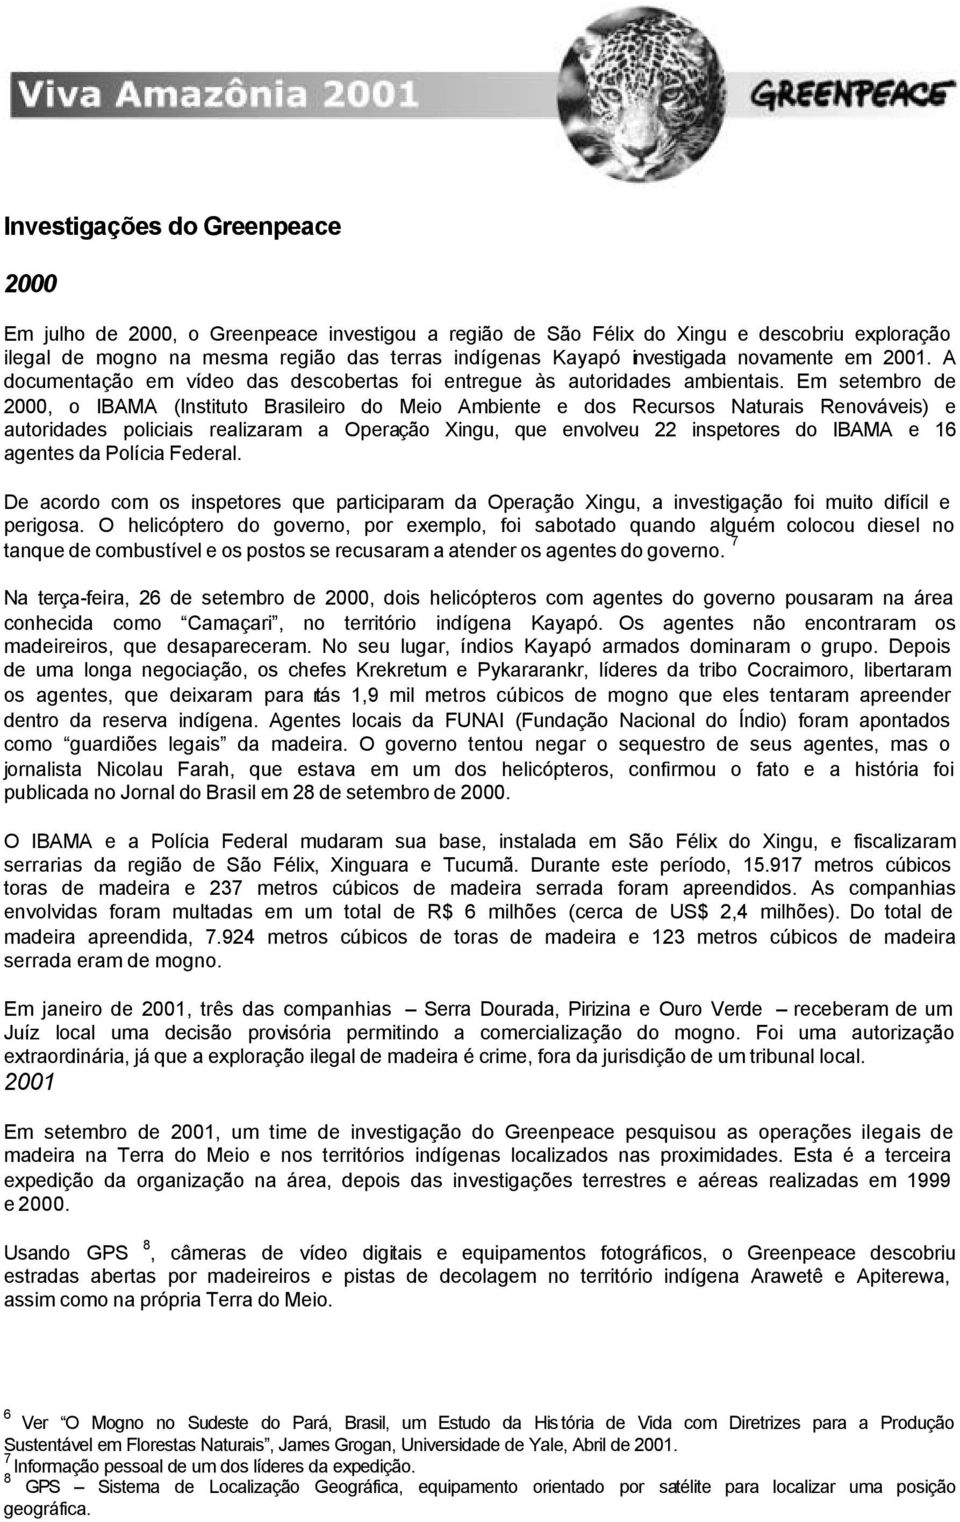 Em setembro de 2000, o IBAMA (Instituto Brasileiro do Meio Ambiente e dos Recursos Naturais Renováveis) e autoridades policiais realizaram a Operação Xingu, que envolveu 22 inspetores do IBAMA e 16